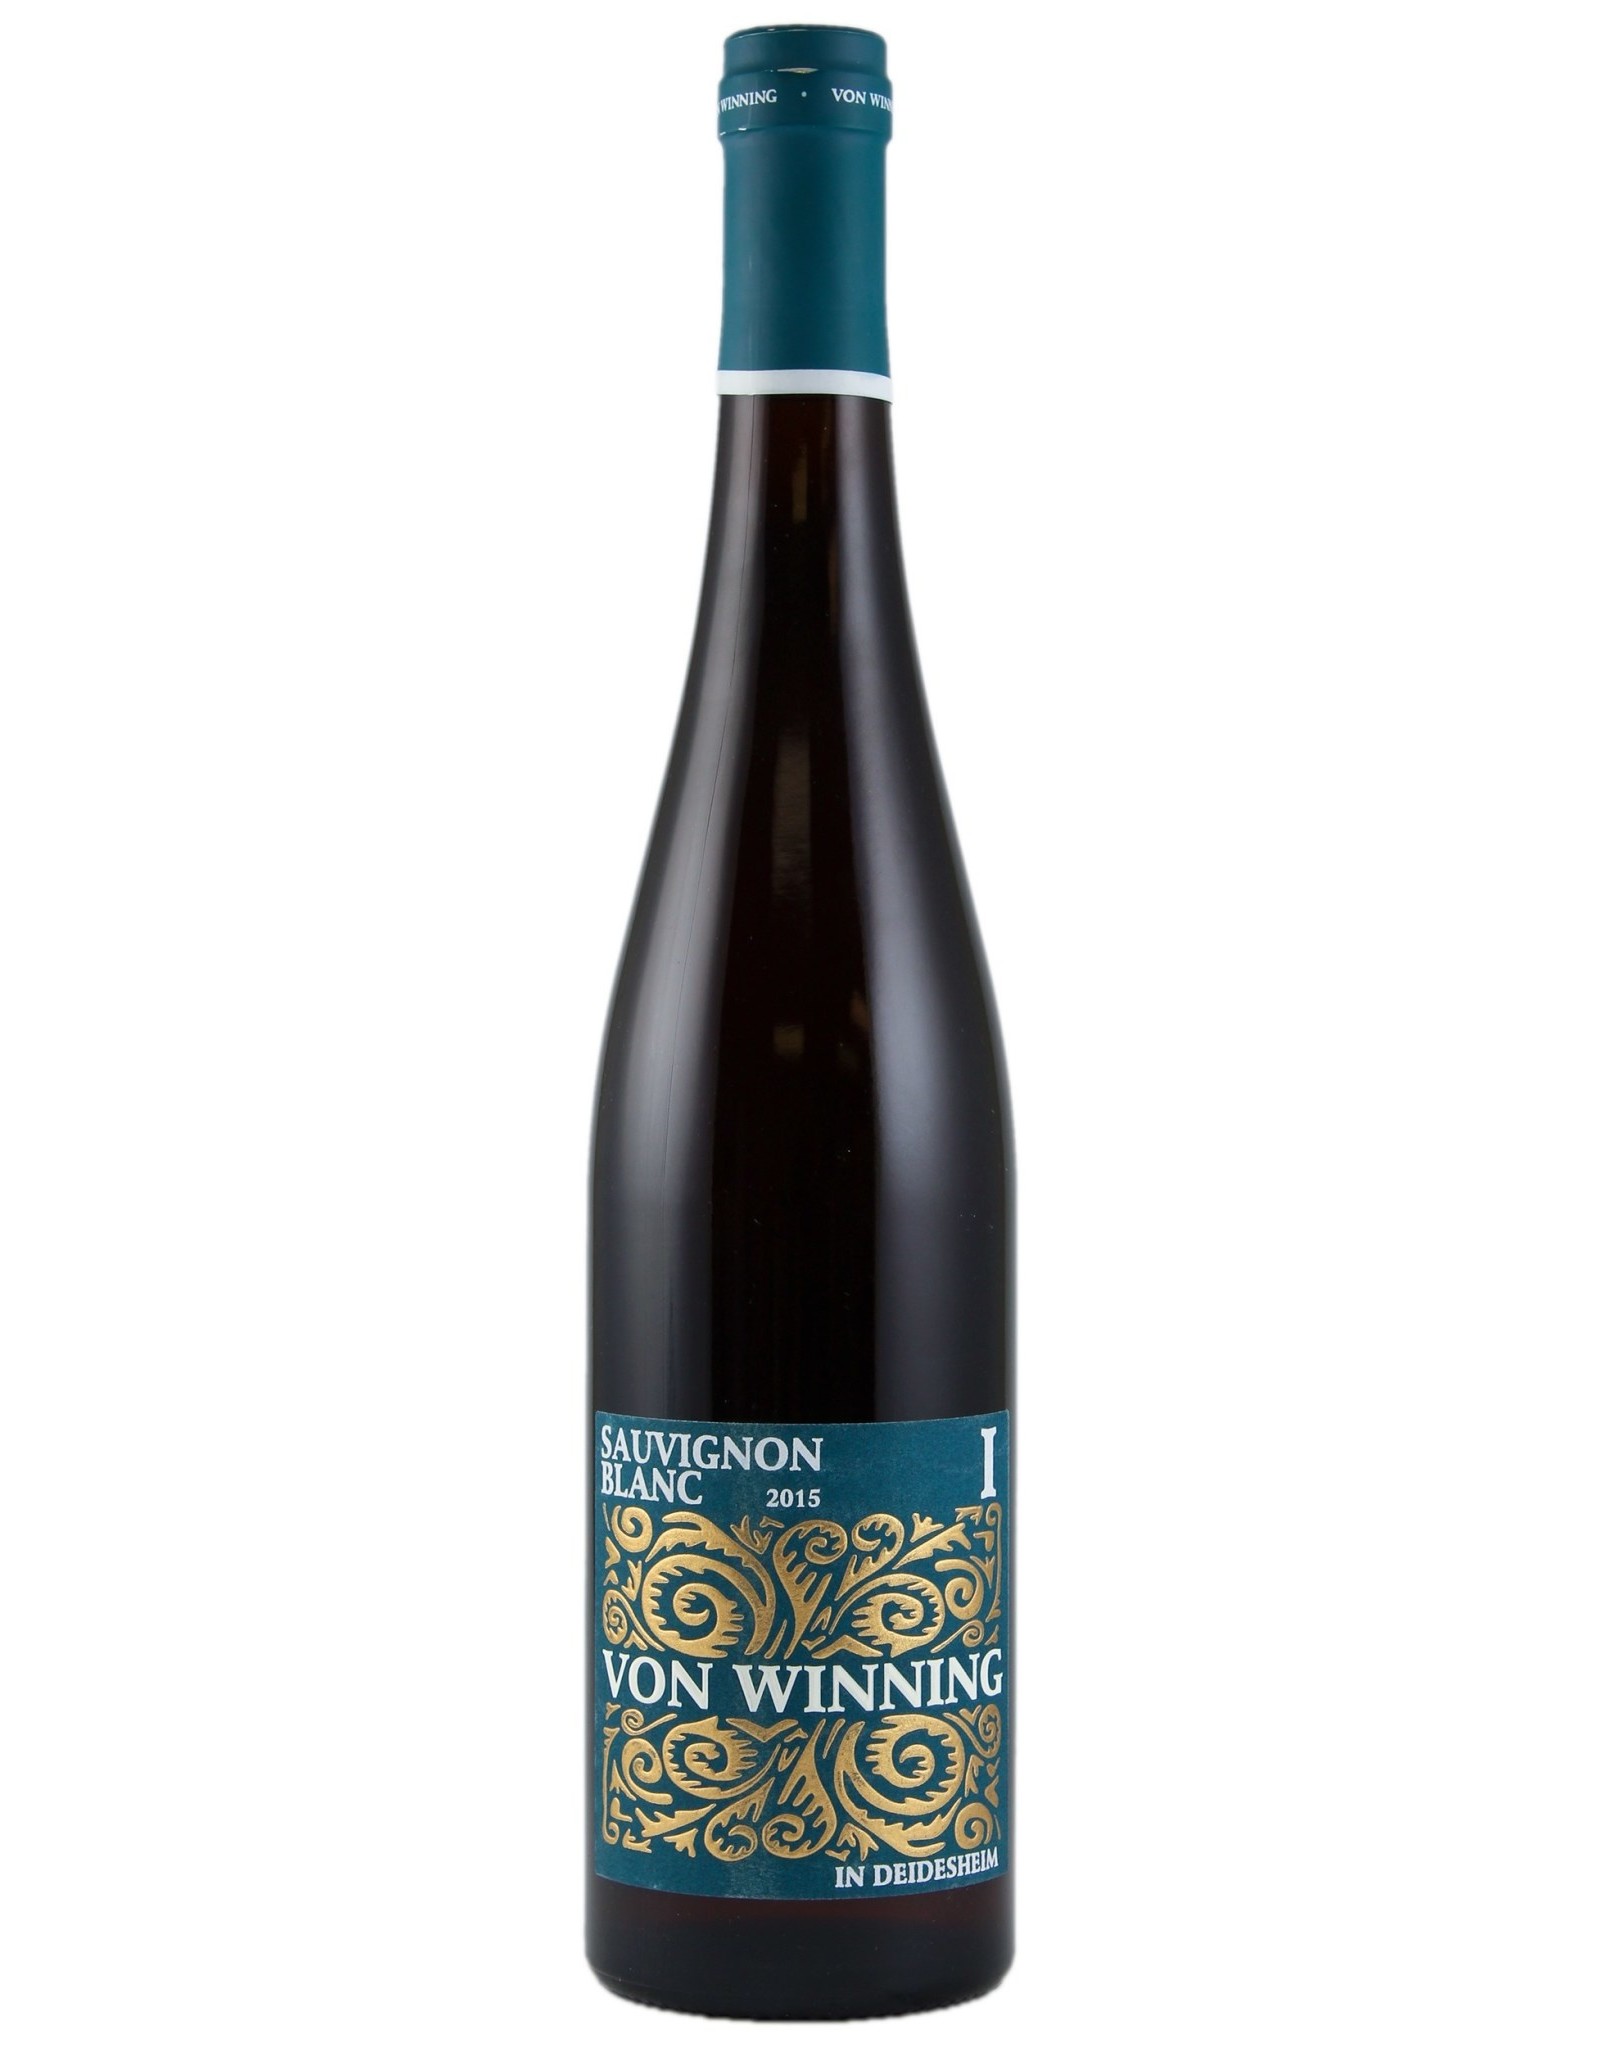 Von Winning Sauvignon Blanc 2015